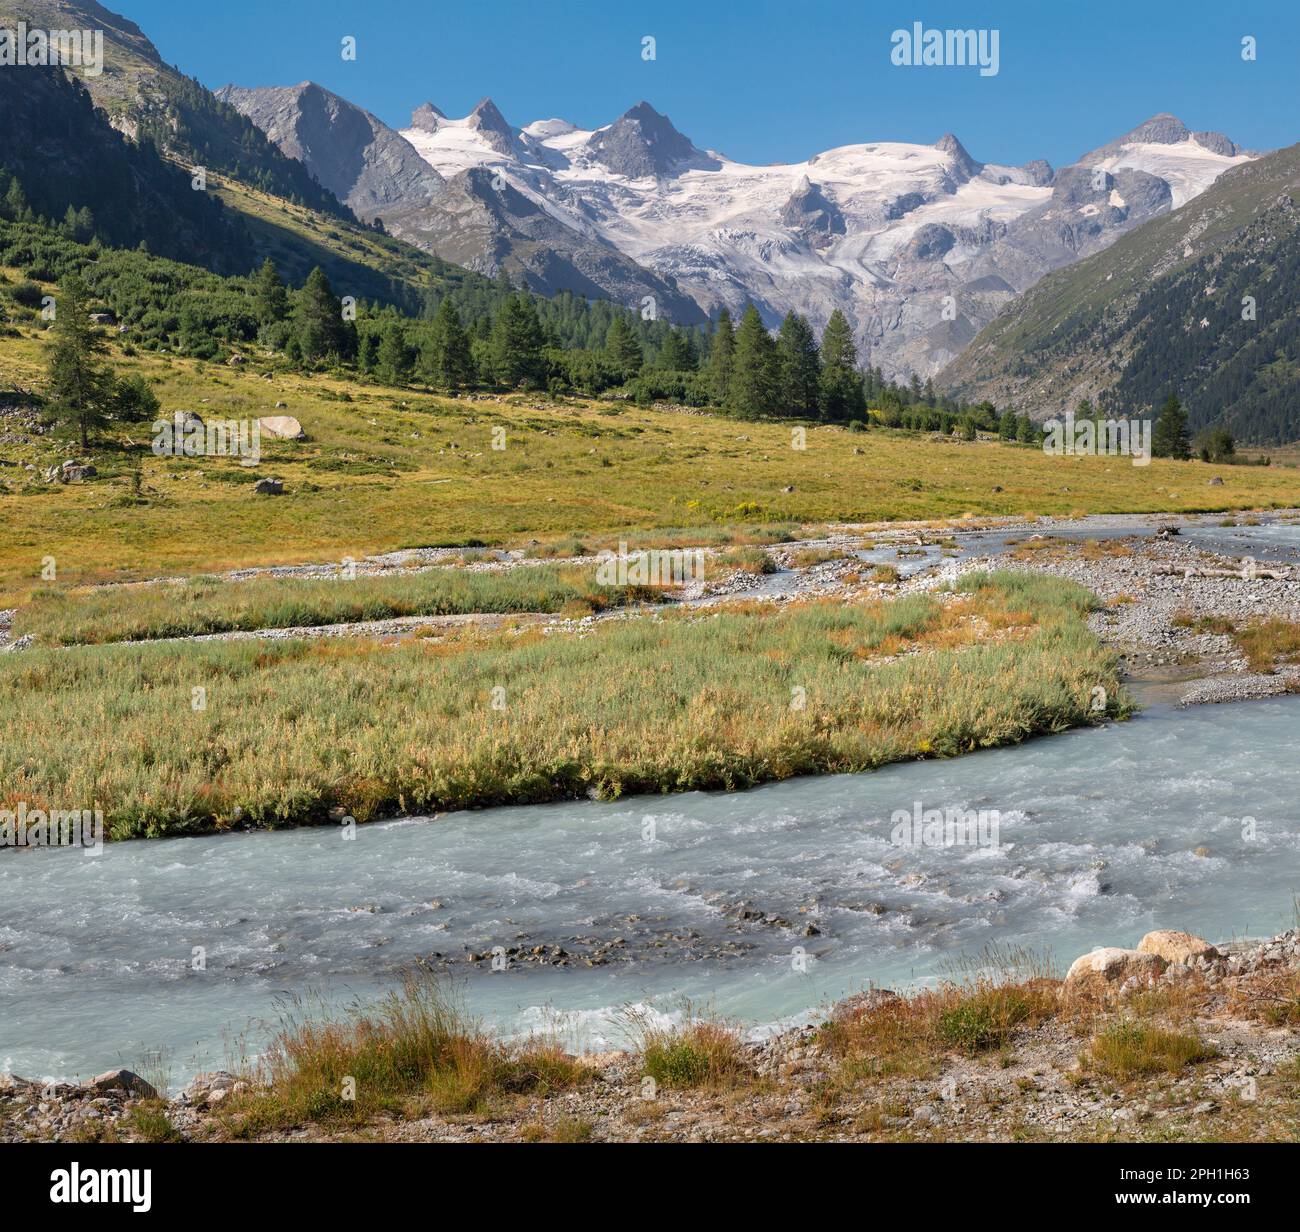 Svizzera - la valle del Roseg sotto le cime il Caputschin, la Muongia, Forcola alta e Ghiacciaio Roseg. Foto Stock